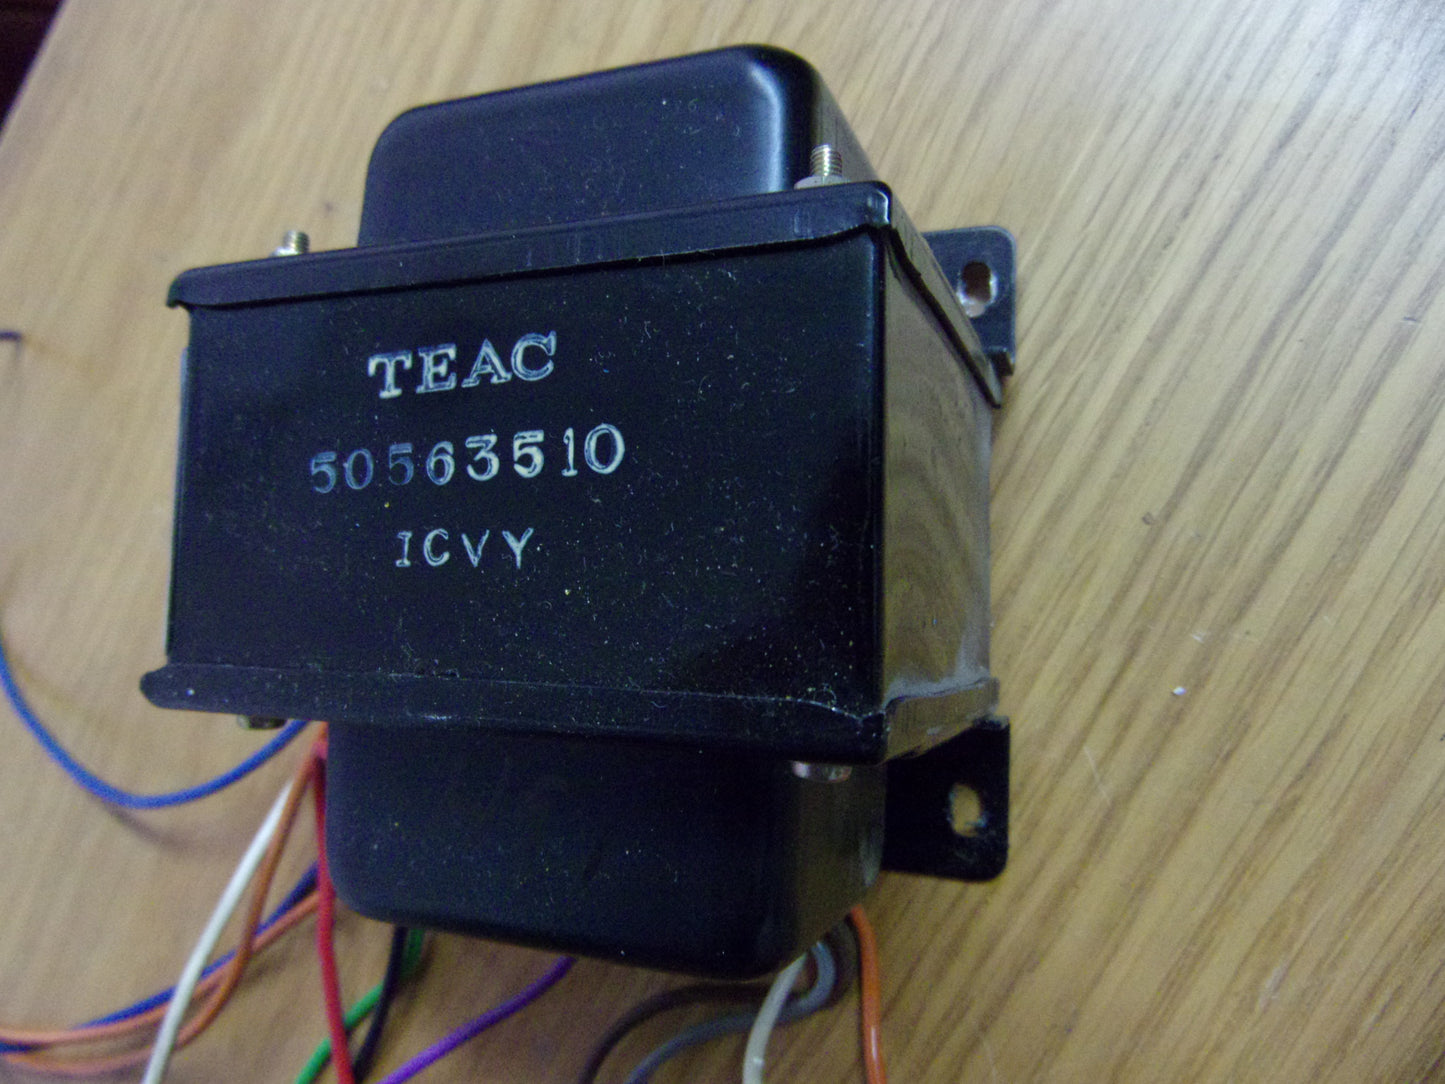 Teac A-2300SX power transformer 50563510